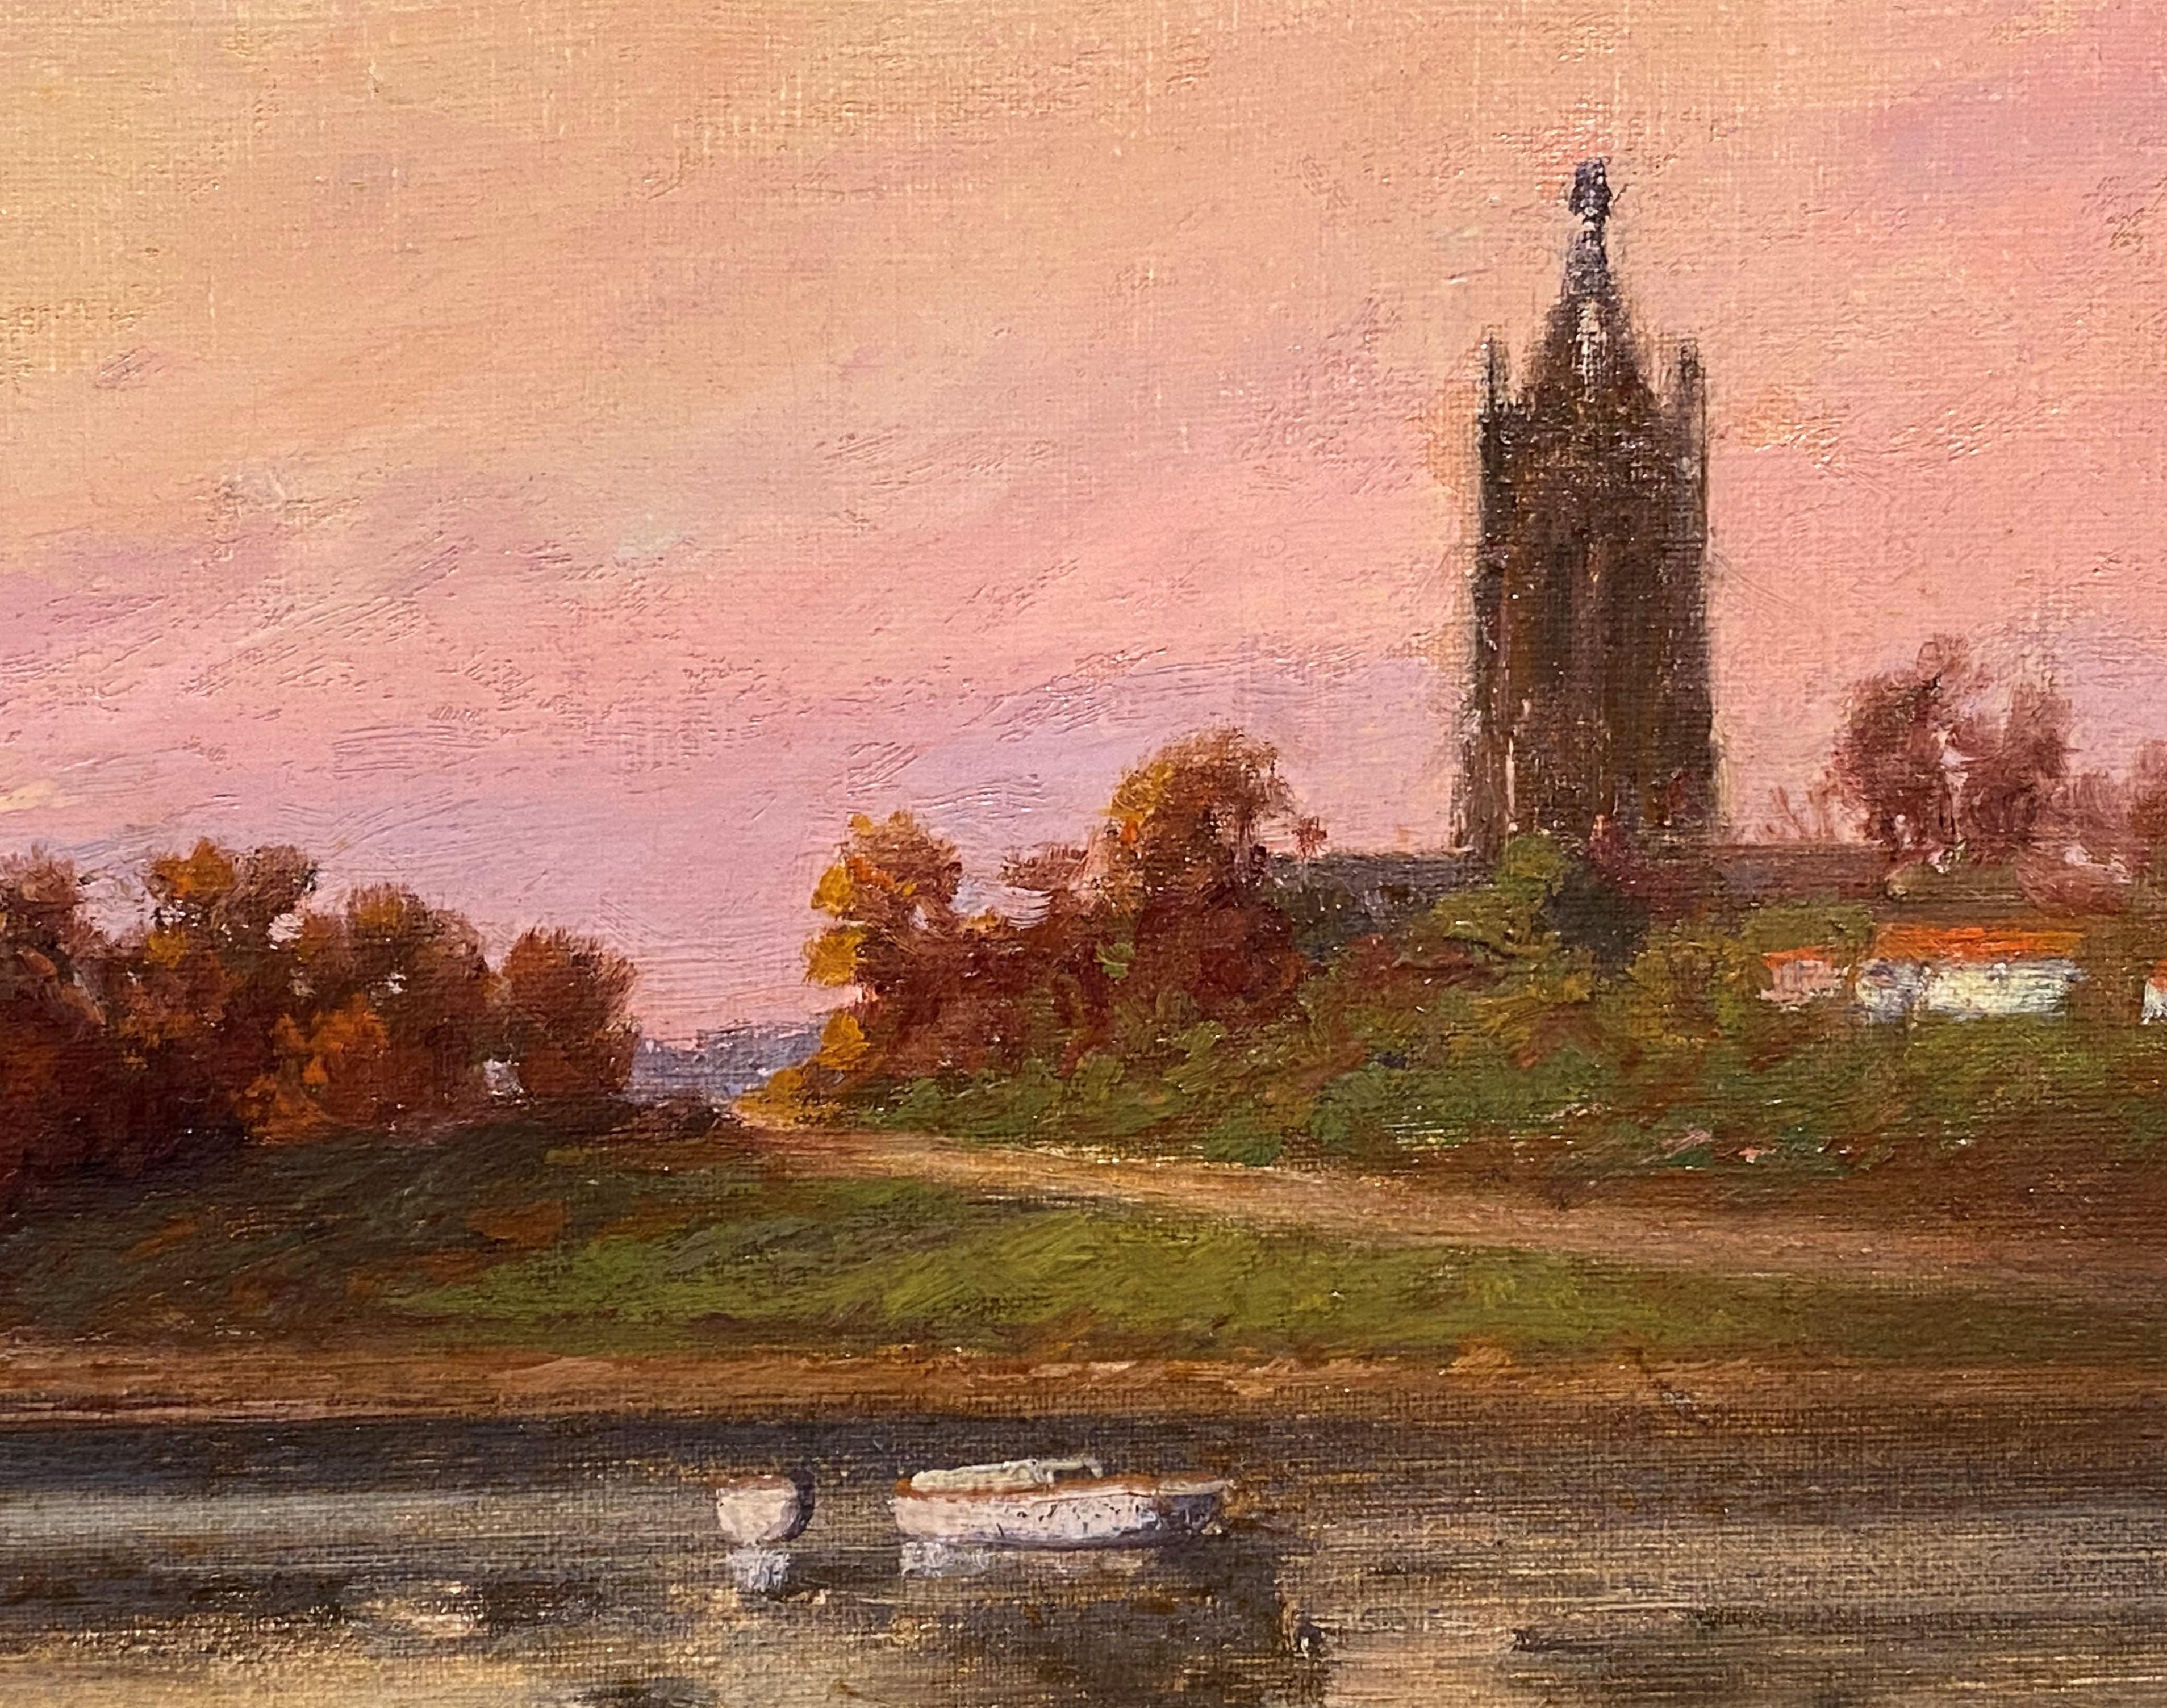 Une belle peinture à l'huile impressionniste d'un paysage de la région de Boston, Massachusetts, réalisée par l'artiste américain C. Myron Clark (1858-1925). Clark était un peintre actif du Massachusetts, connu pour ses portraits de bateaux et ses